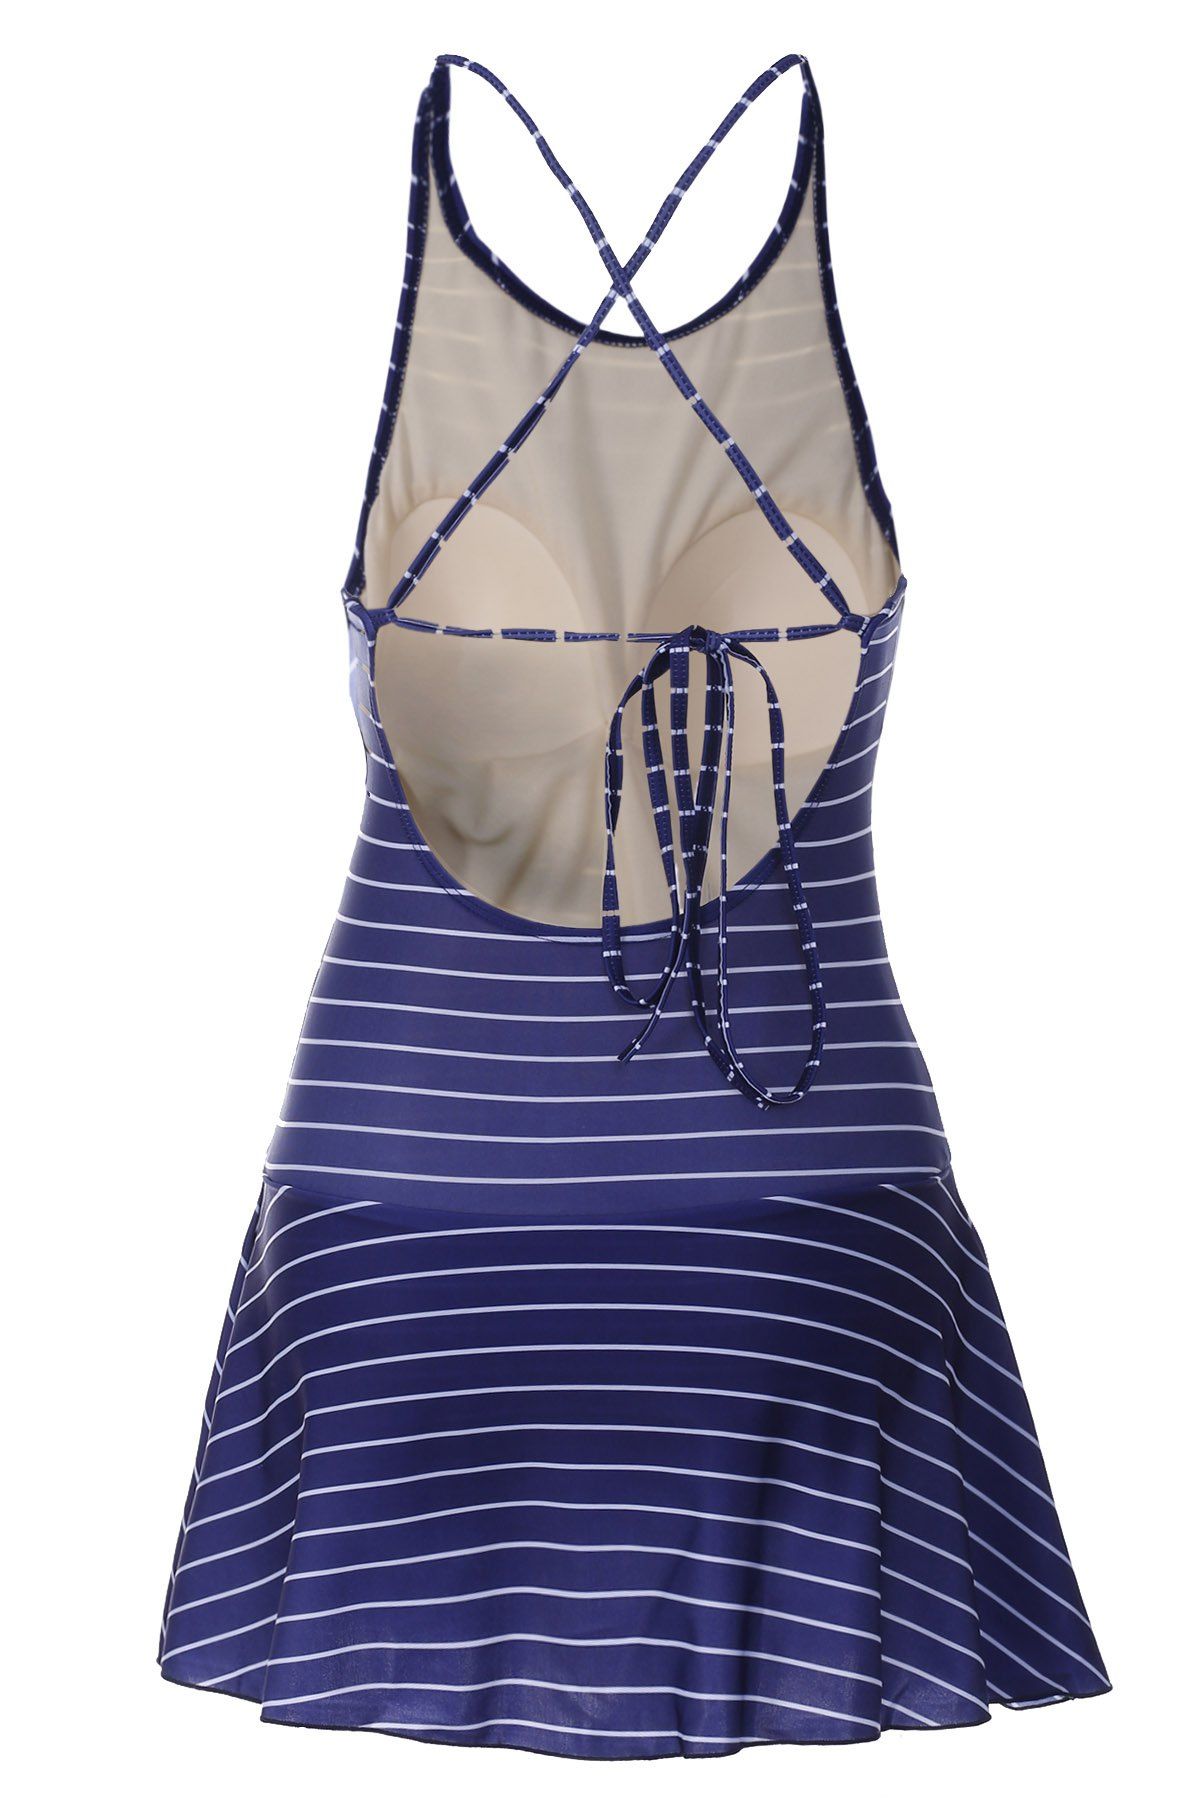 2018 Sweet Striped Backless Flounced One-Piece Swimwear For Women ...